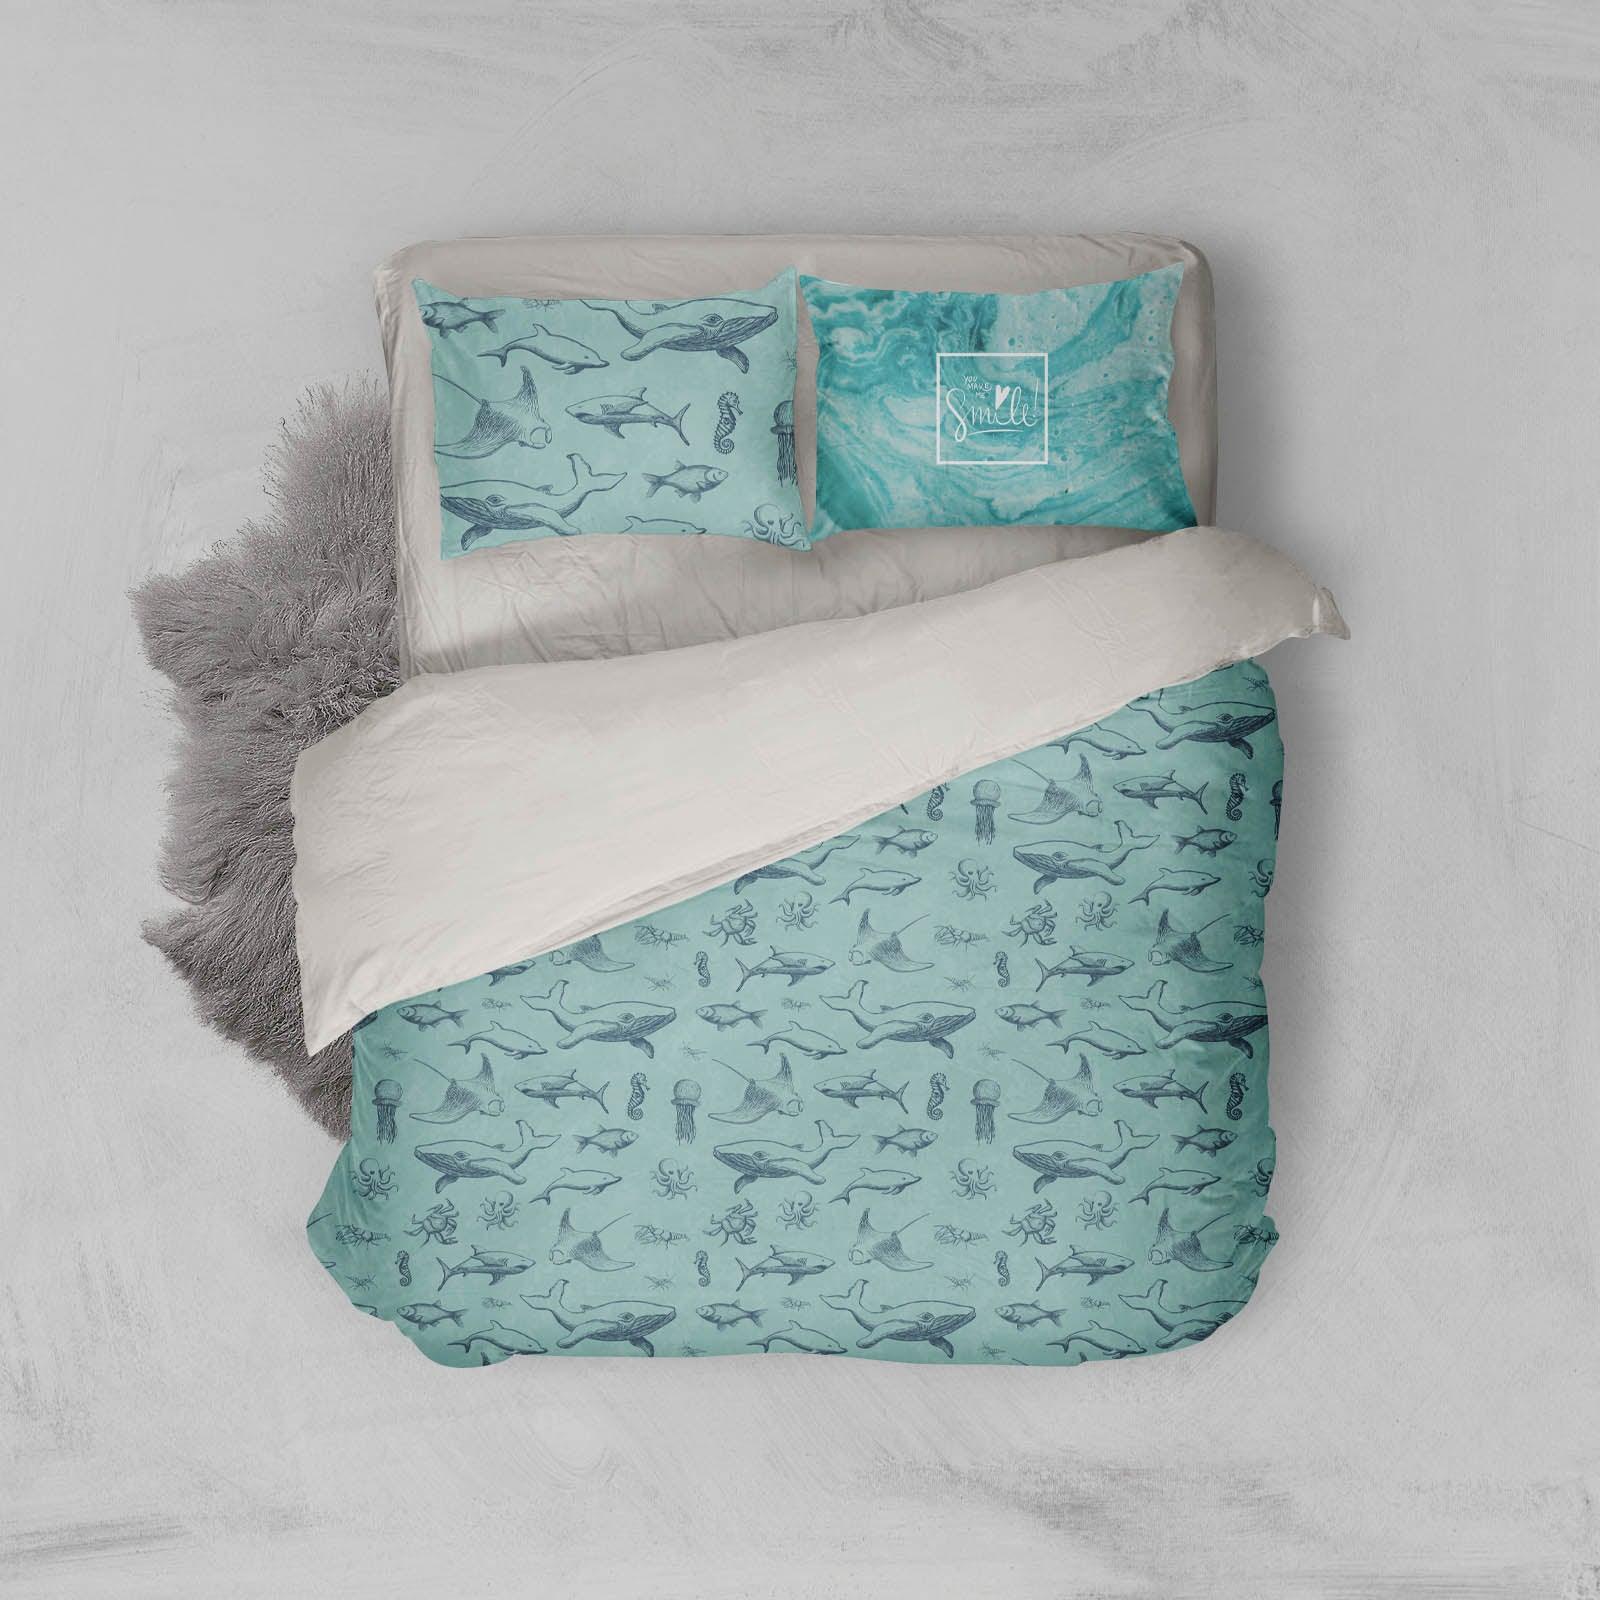 3D Ocean Shark Green Yellow Quilt Cover Set Bedding Set Pillowcases 12- Jess Art Decoration